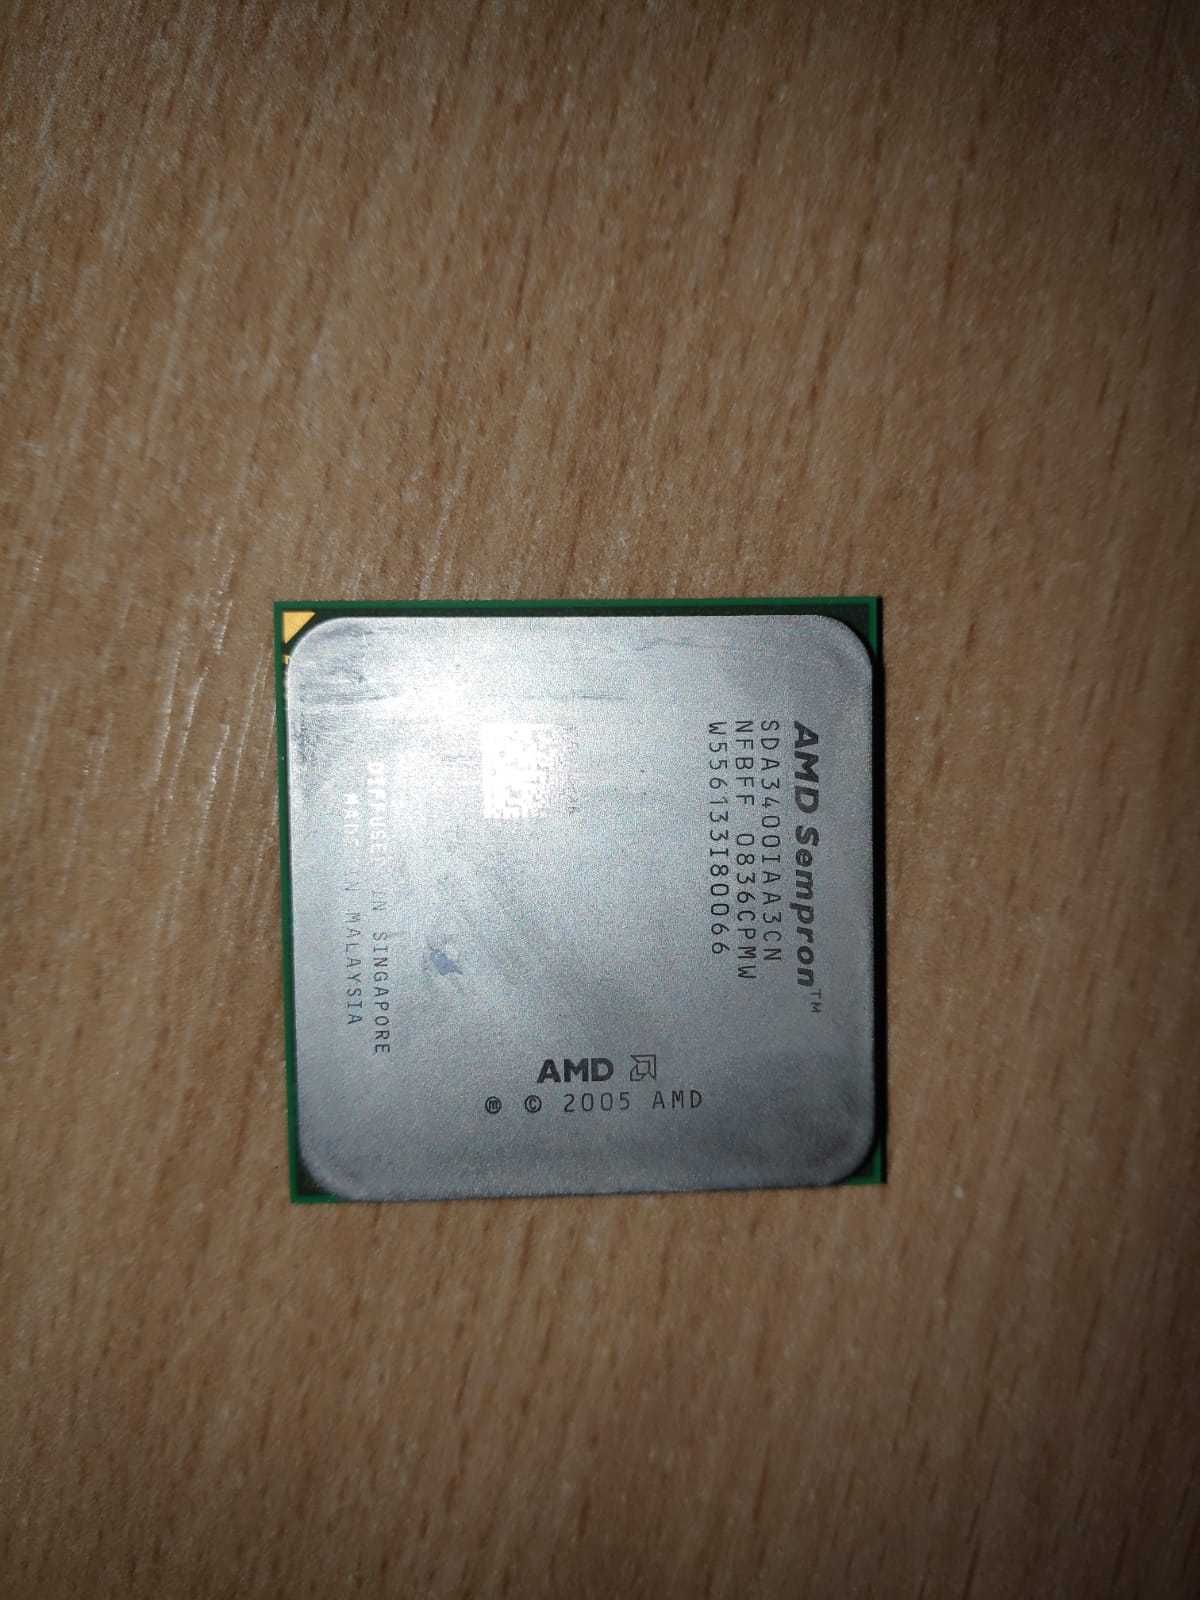 Procesor AMD Sempron 3400 + HDD Hitachi 160gb + 1 DVD ROM